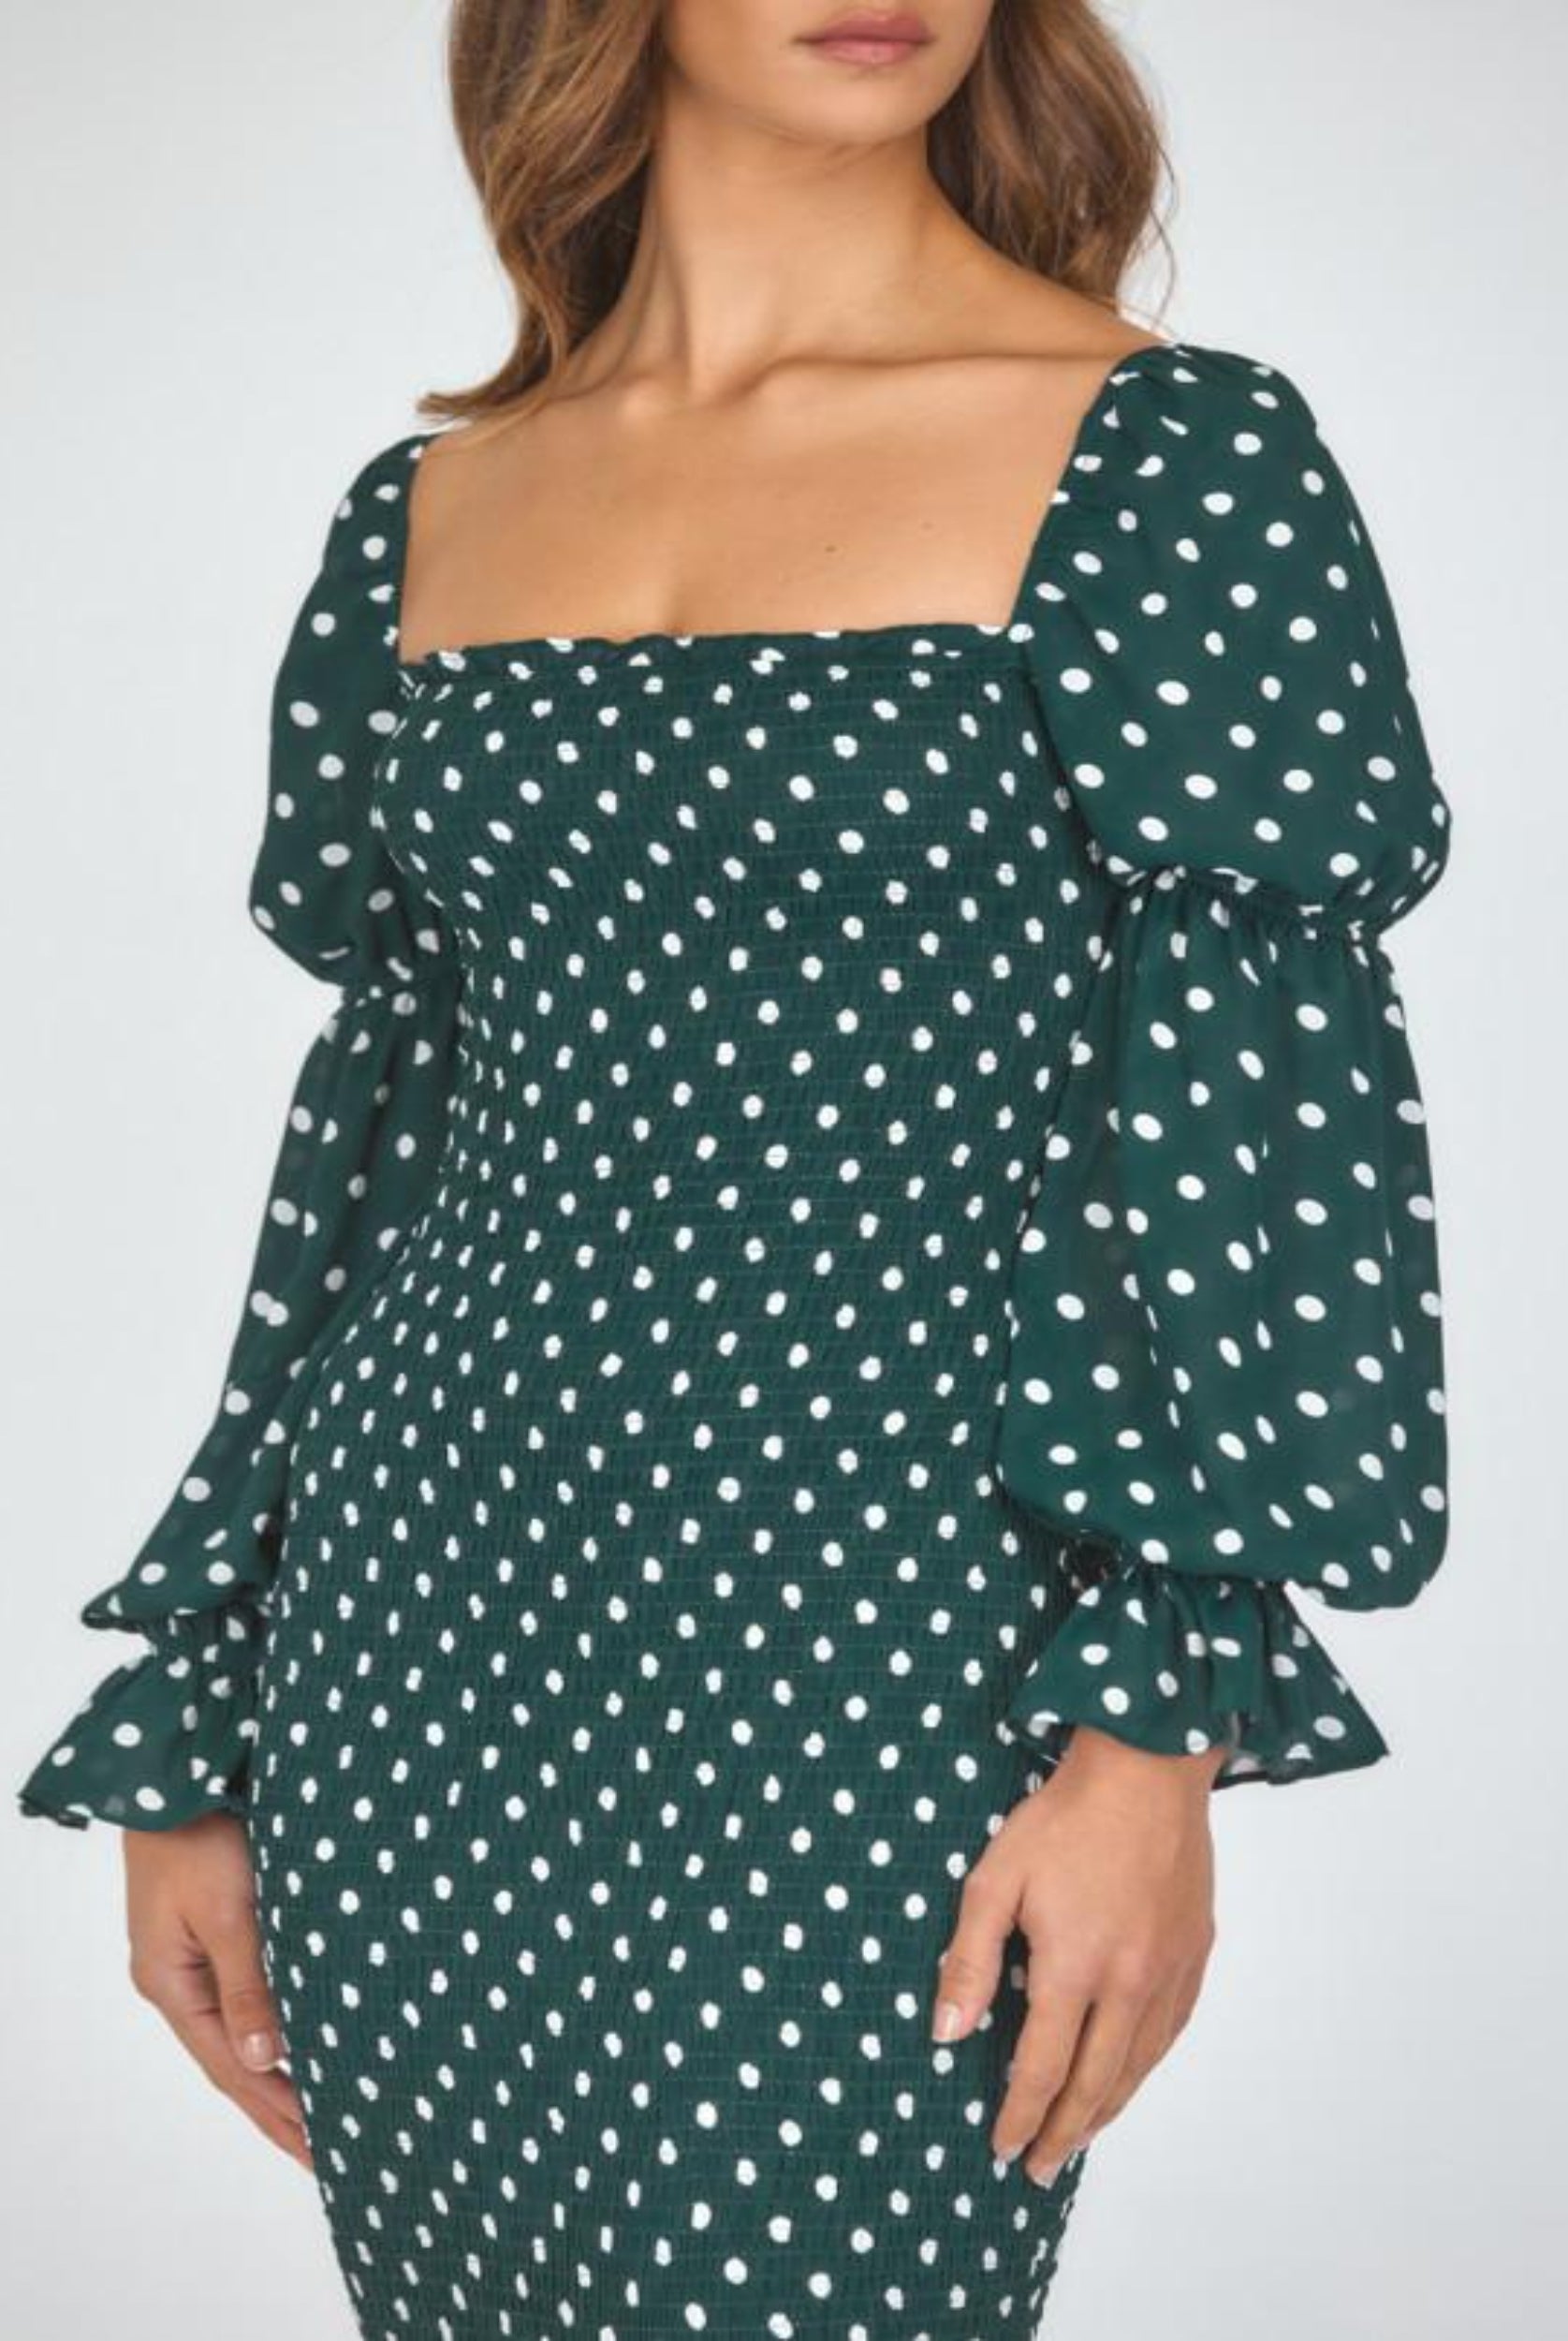 Model wearing dot print dress